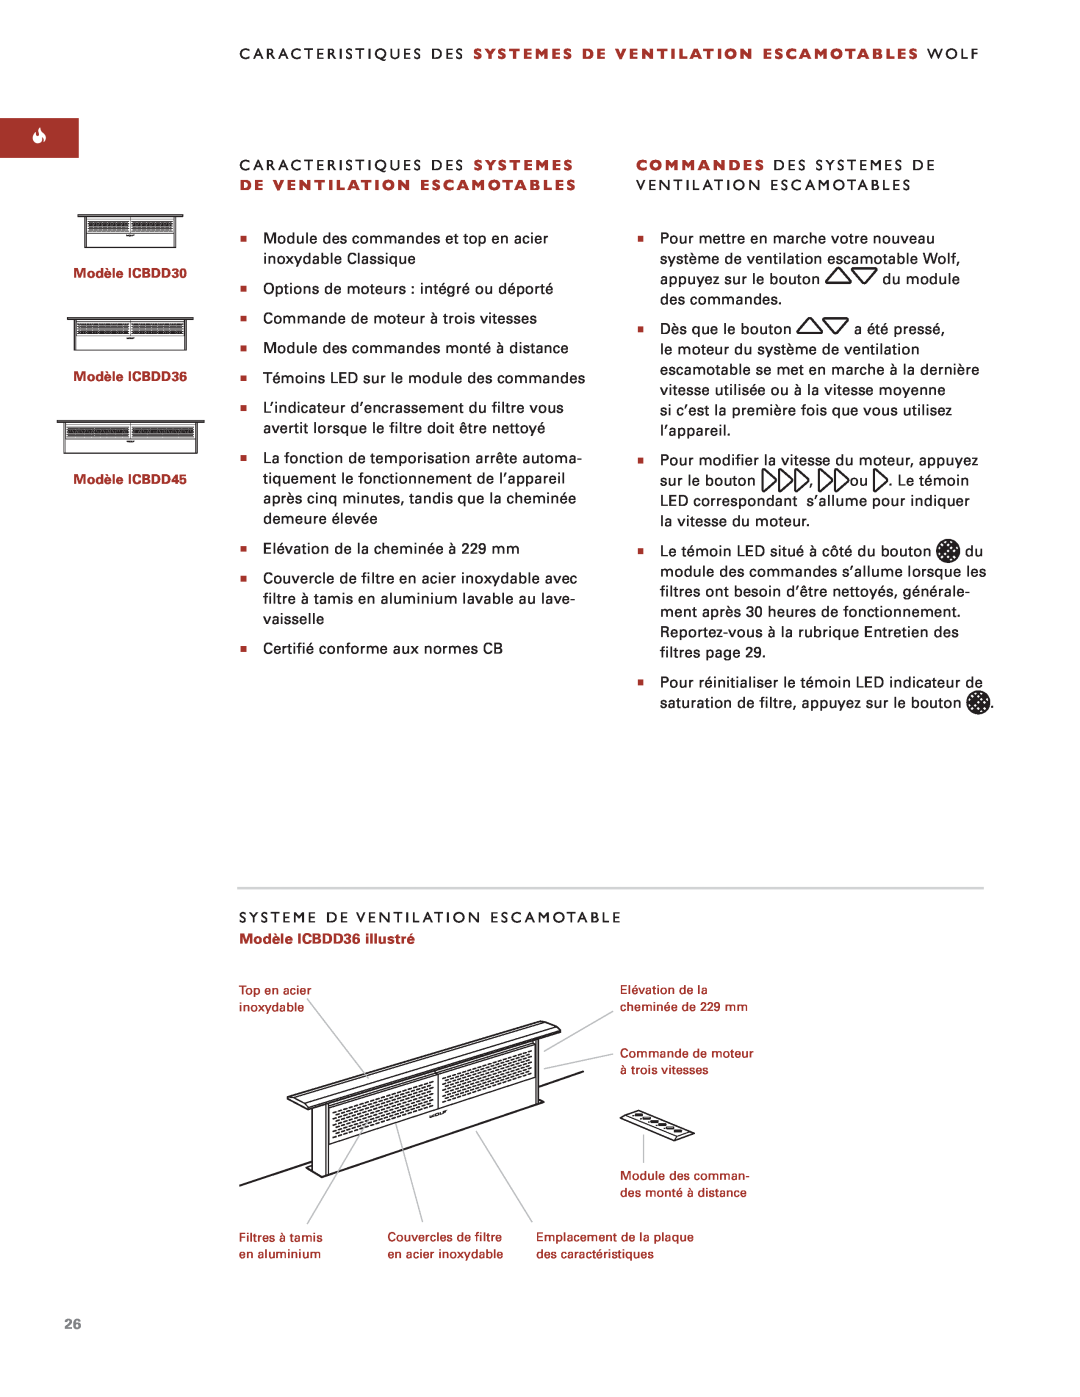 Sub-Zero Downdraft Ventilation Caracteristiques Des Systemes De Ventilation Escamotables Wolf, Modèle ICBDD36 illustré 